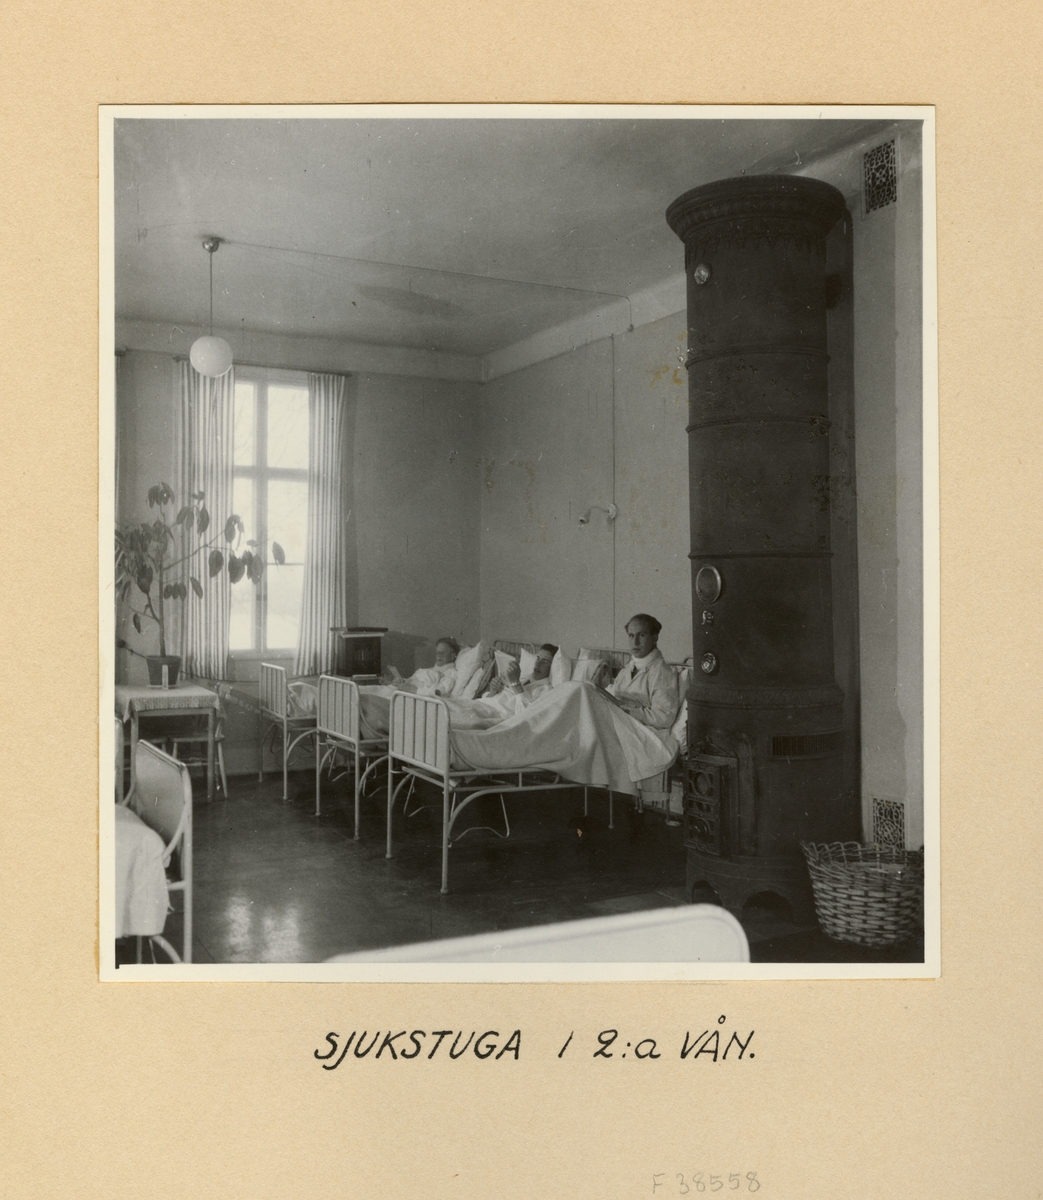 Sjukstugan på 2:a våningen, Svea artilleriregemente A 1, våren 1947.